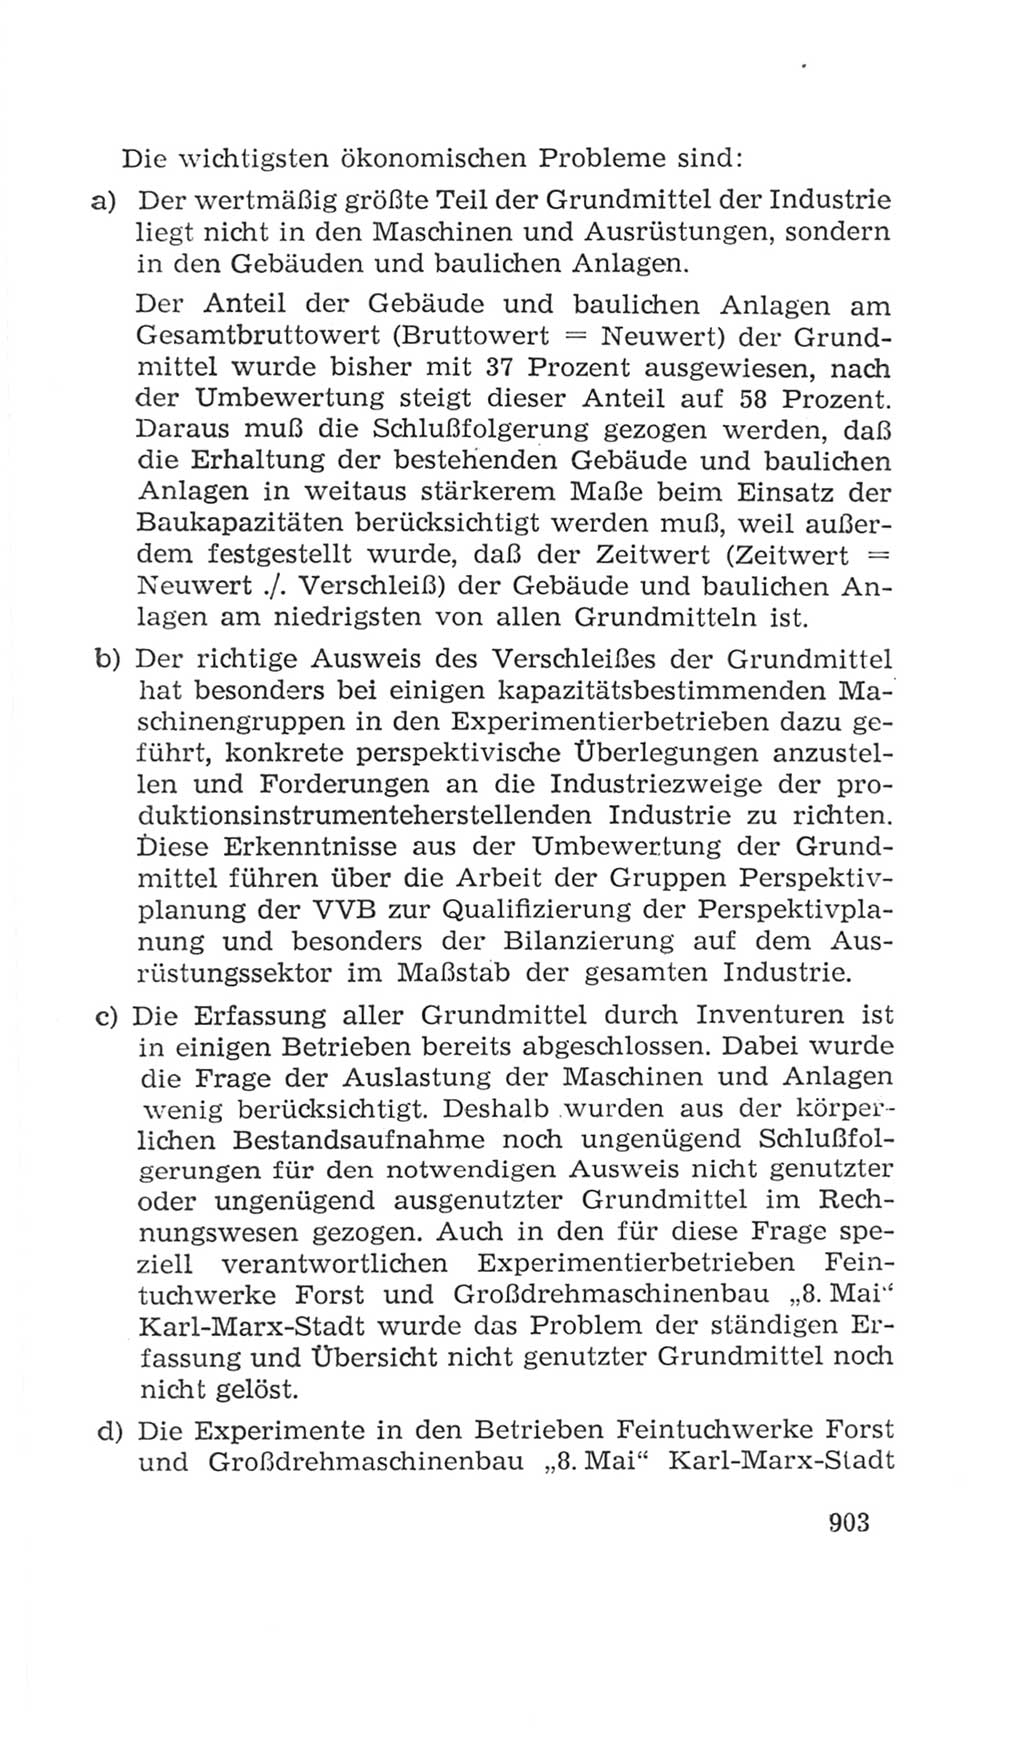 Volkskammer (VK) der Deutschen Demokratischen Republik (DDR), 4. Wahlperiode 1963-1967, Seite 903 (VK. DDR 4. WP. 1963-1967, S. 903)